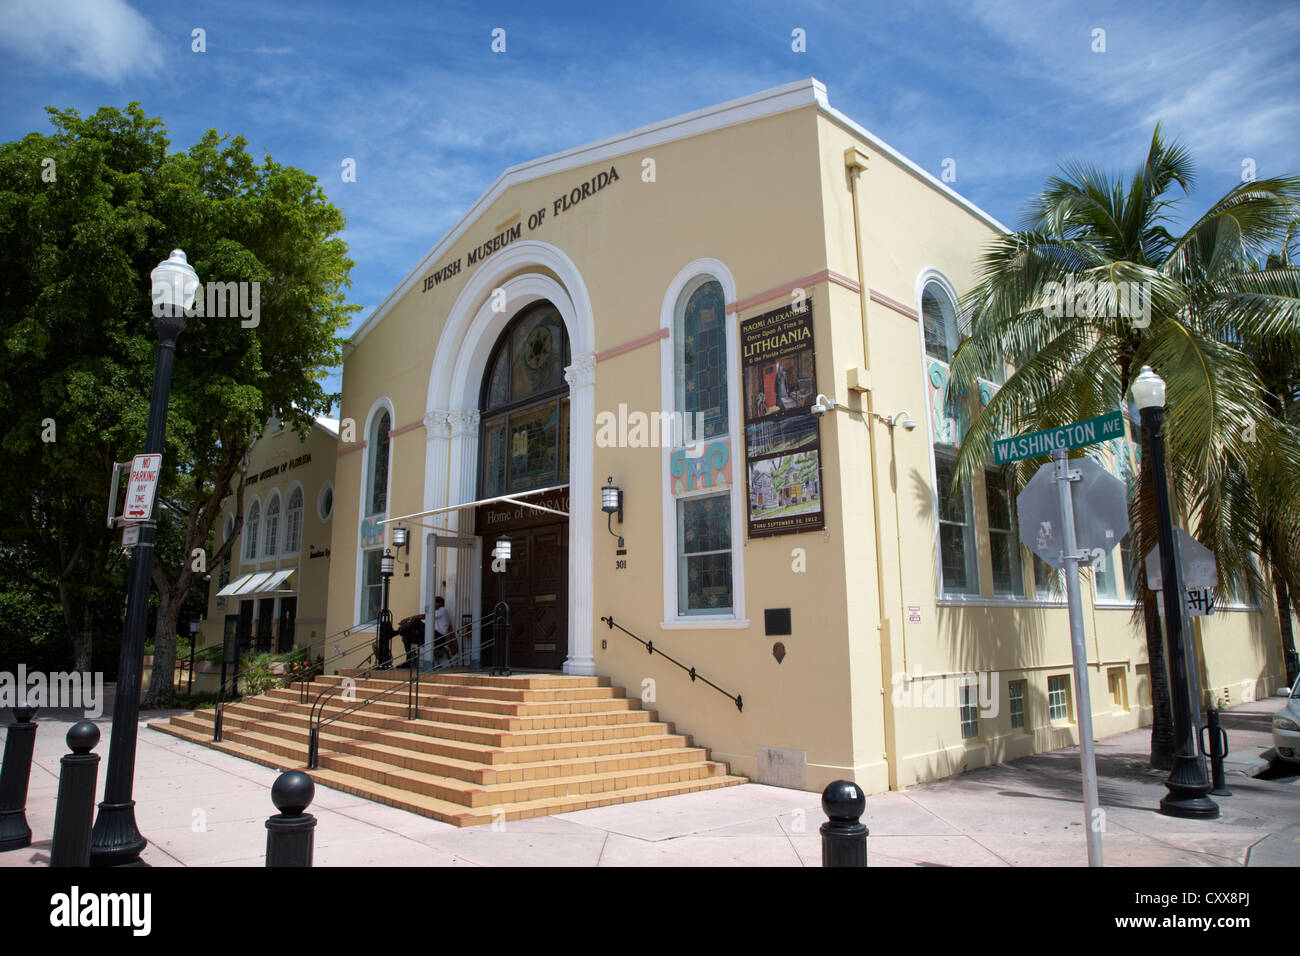 Le musée juif de Floride Miami South beach floride usa Banque D'Images